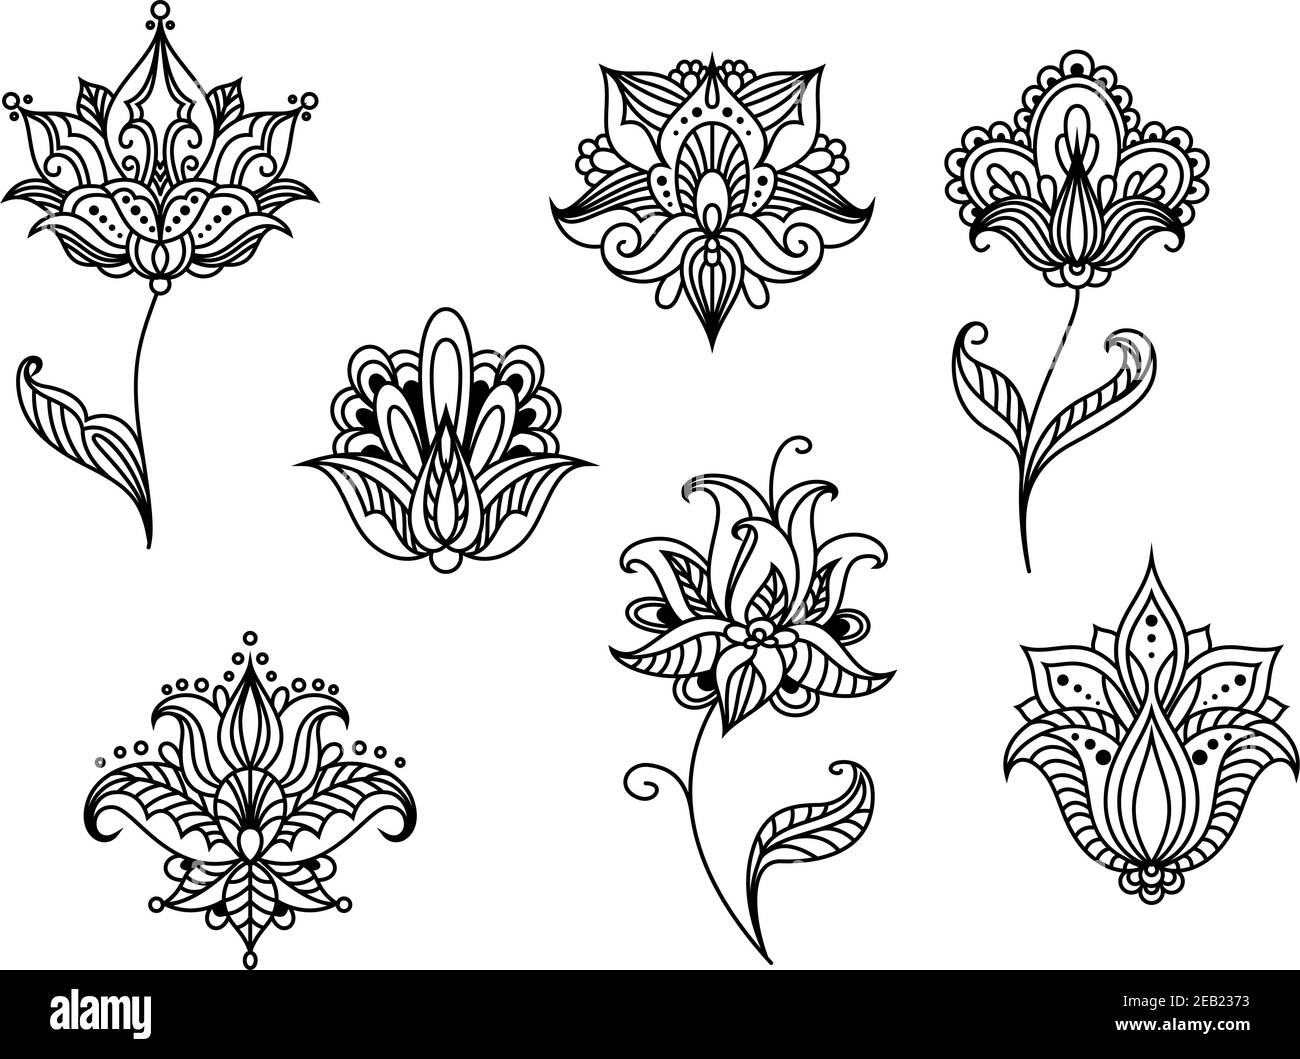 Luftig durchbrochene schwarze florale Design-Elemente im persischen Stil darstellen Abstrakte Paisley-Blüten mit spitzen und abgerundeten Blütenblättern, die gewellt verziert sind Zeilen ein Stock Vektor